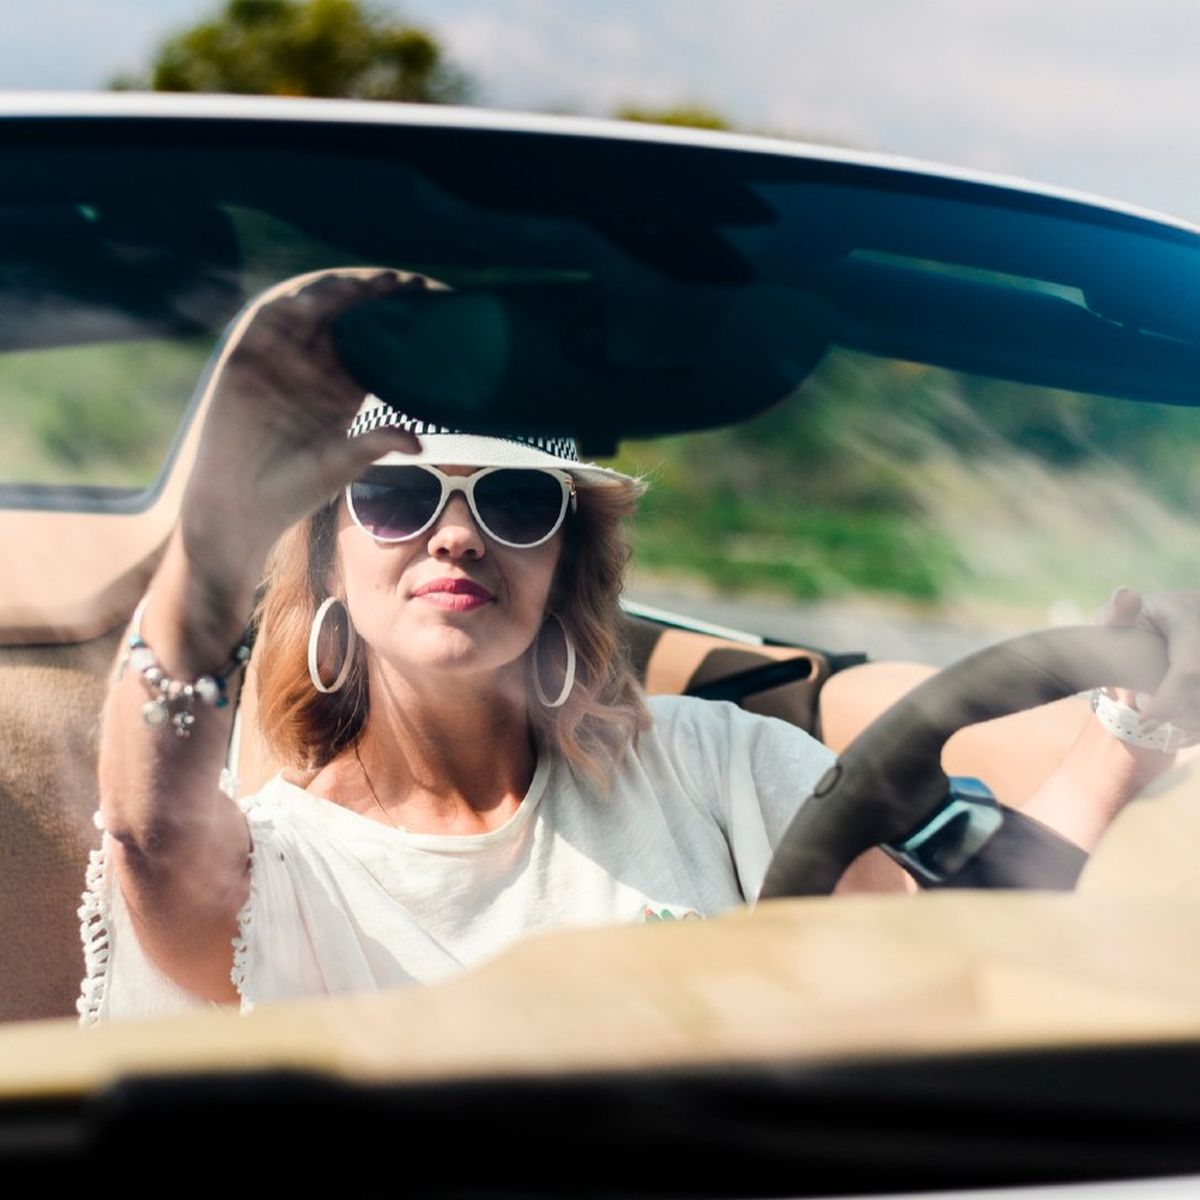 Cuáles son las mejores gafas de sol al momento de conducir?